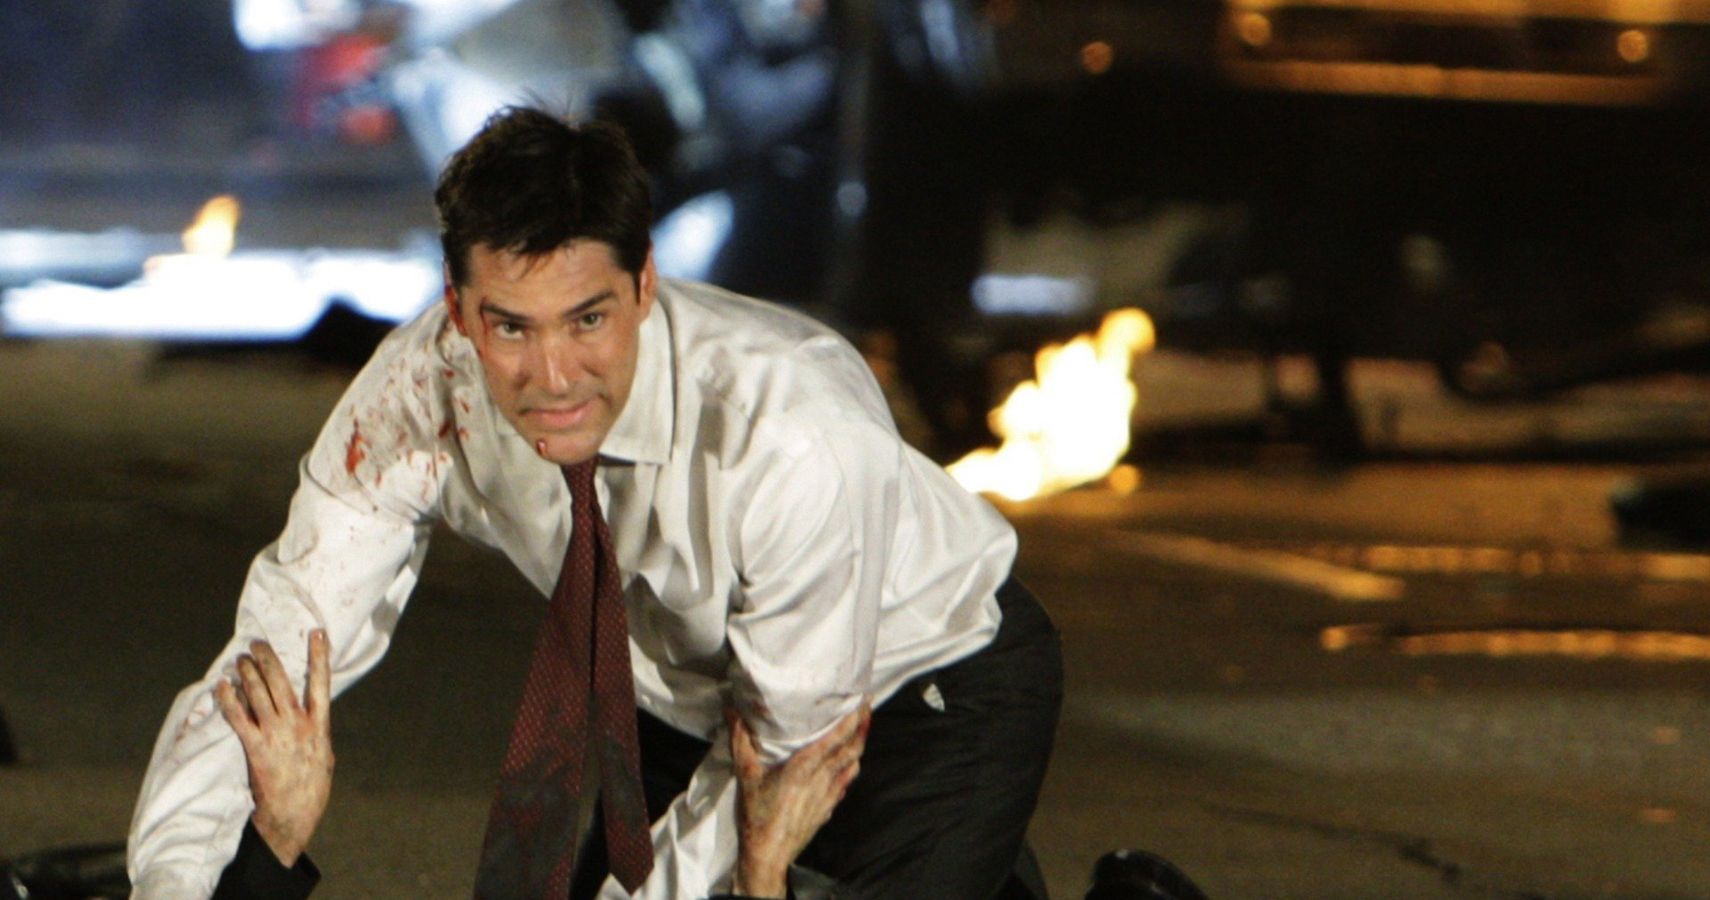 The 20 Best Criminal Minds Episodes Ranked